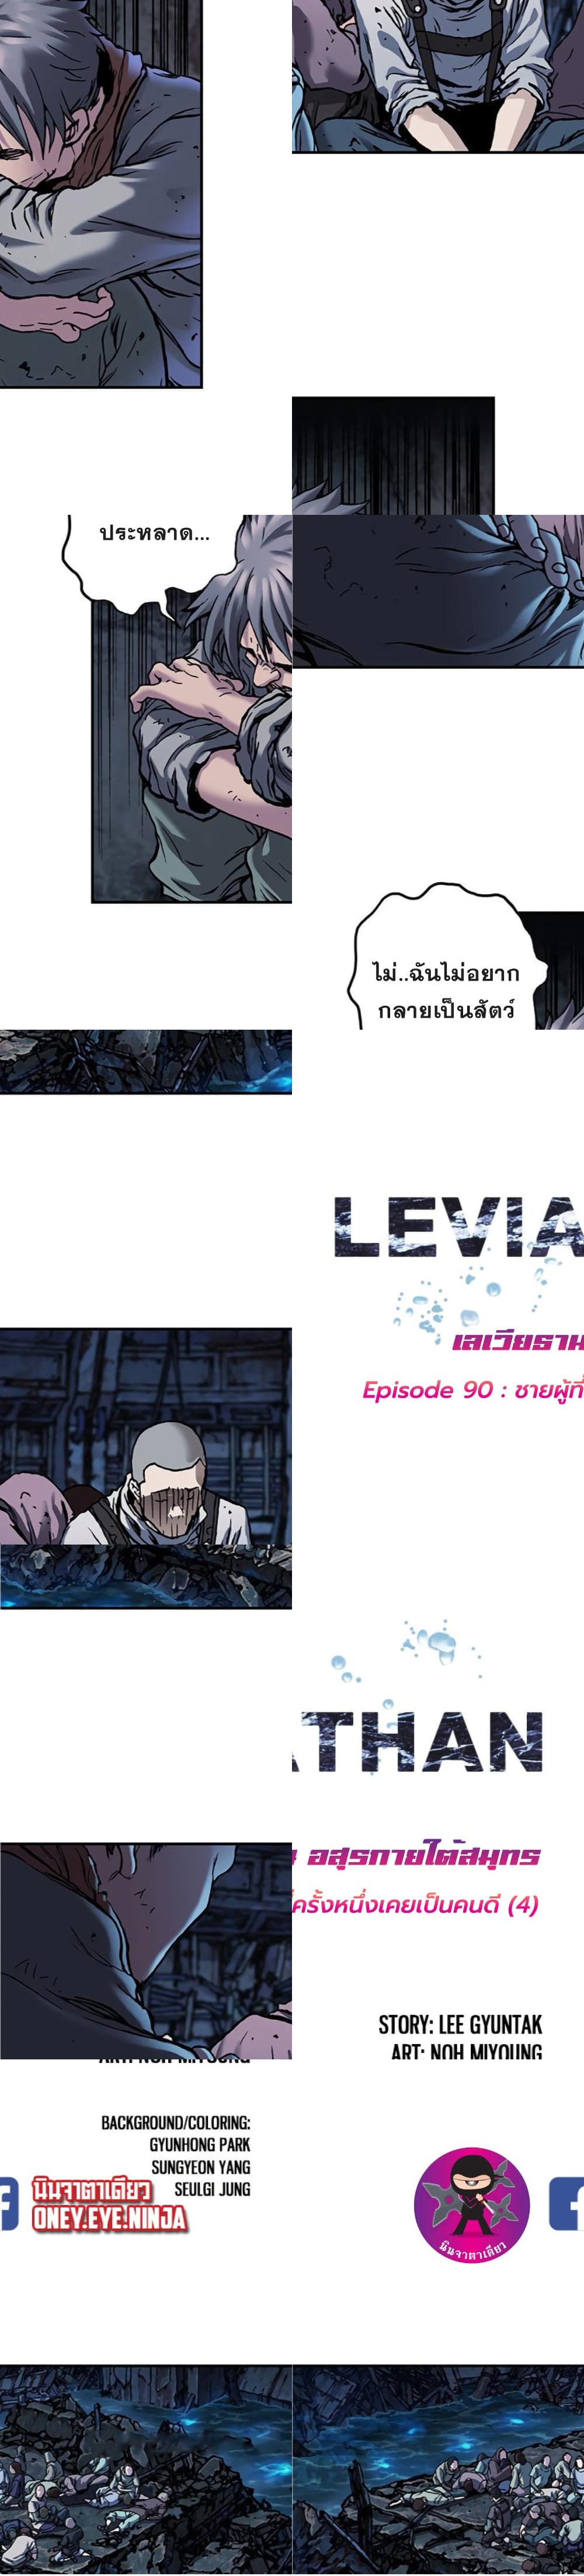 Leviathan - 90 - 2